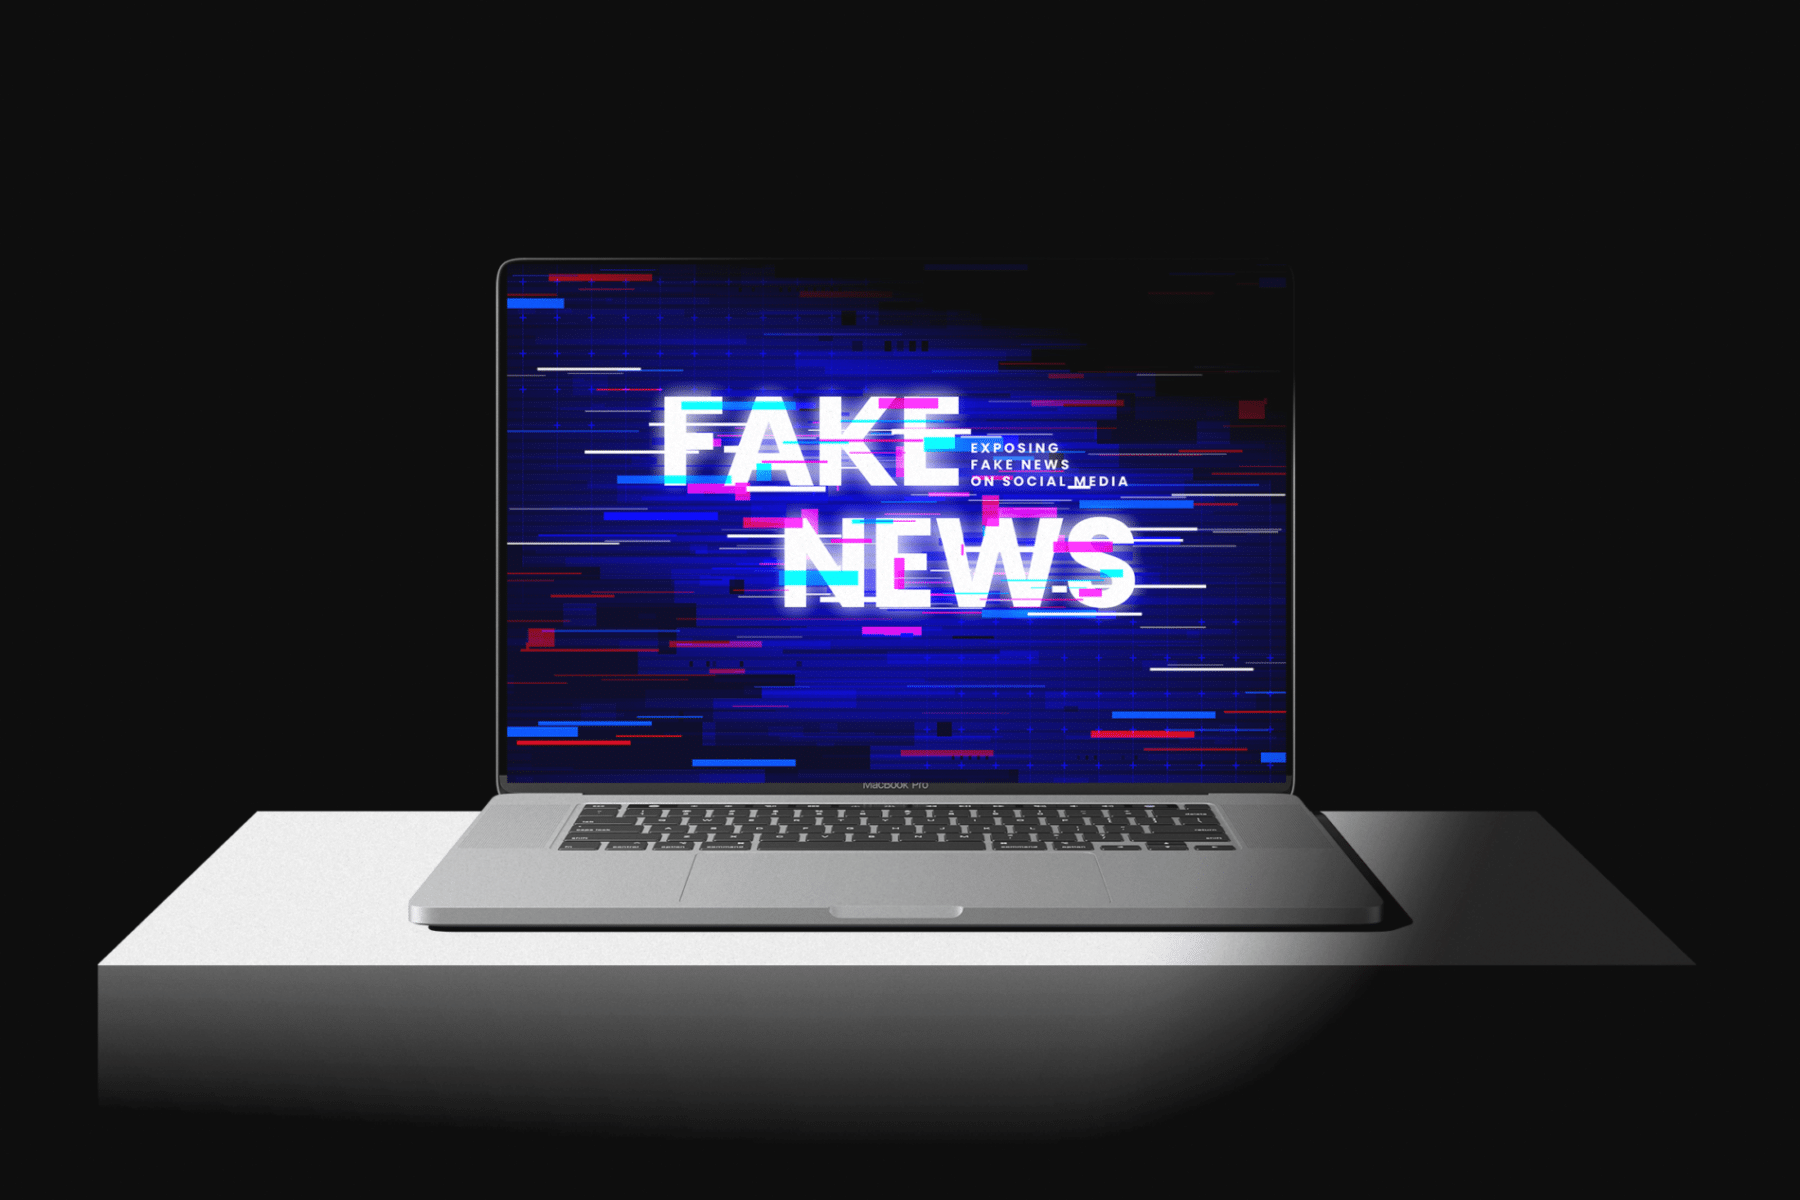 Vítima de fake news é encontrada morta